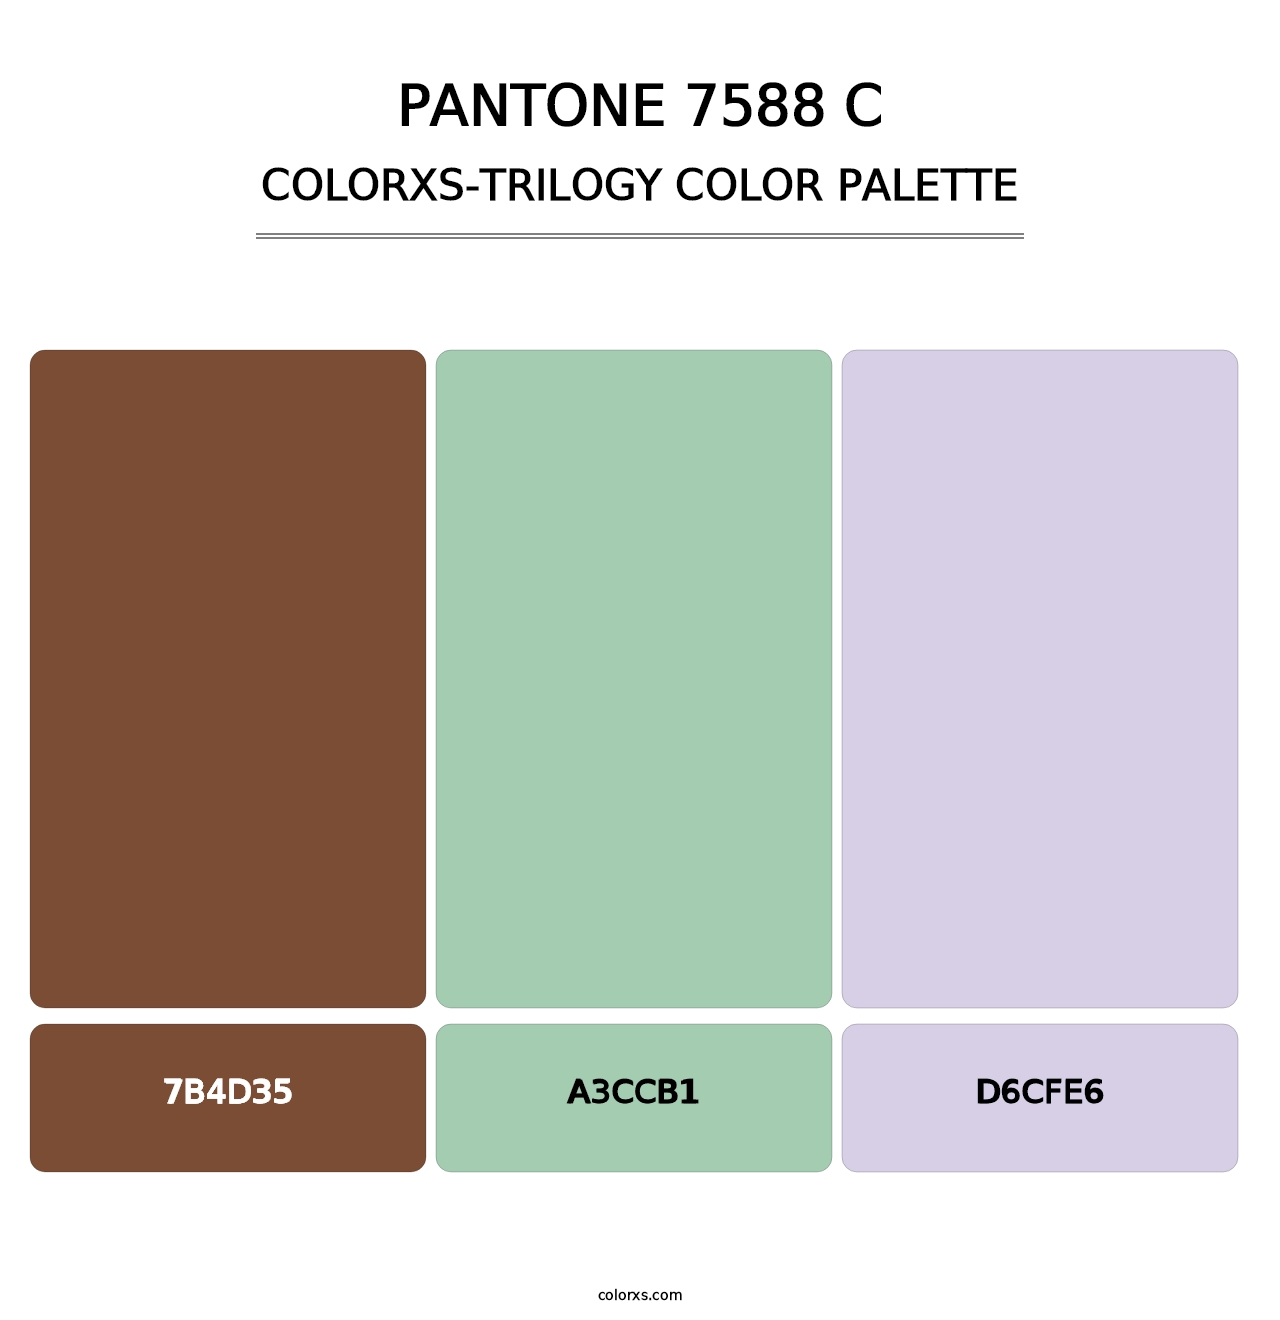 PANTONE 7588 C - Colorxs Trilogy Palette